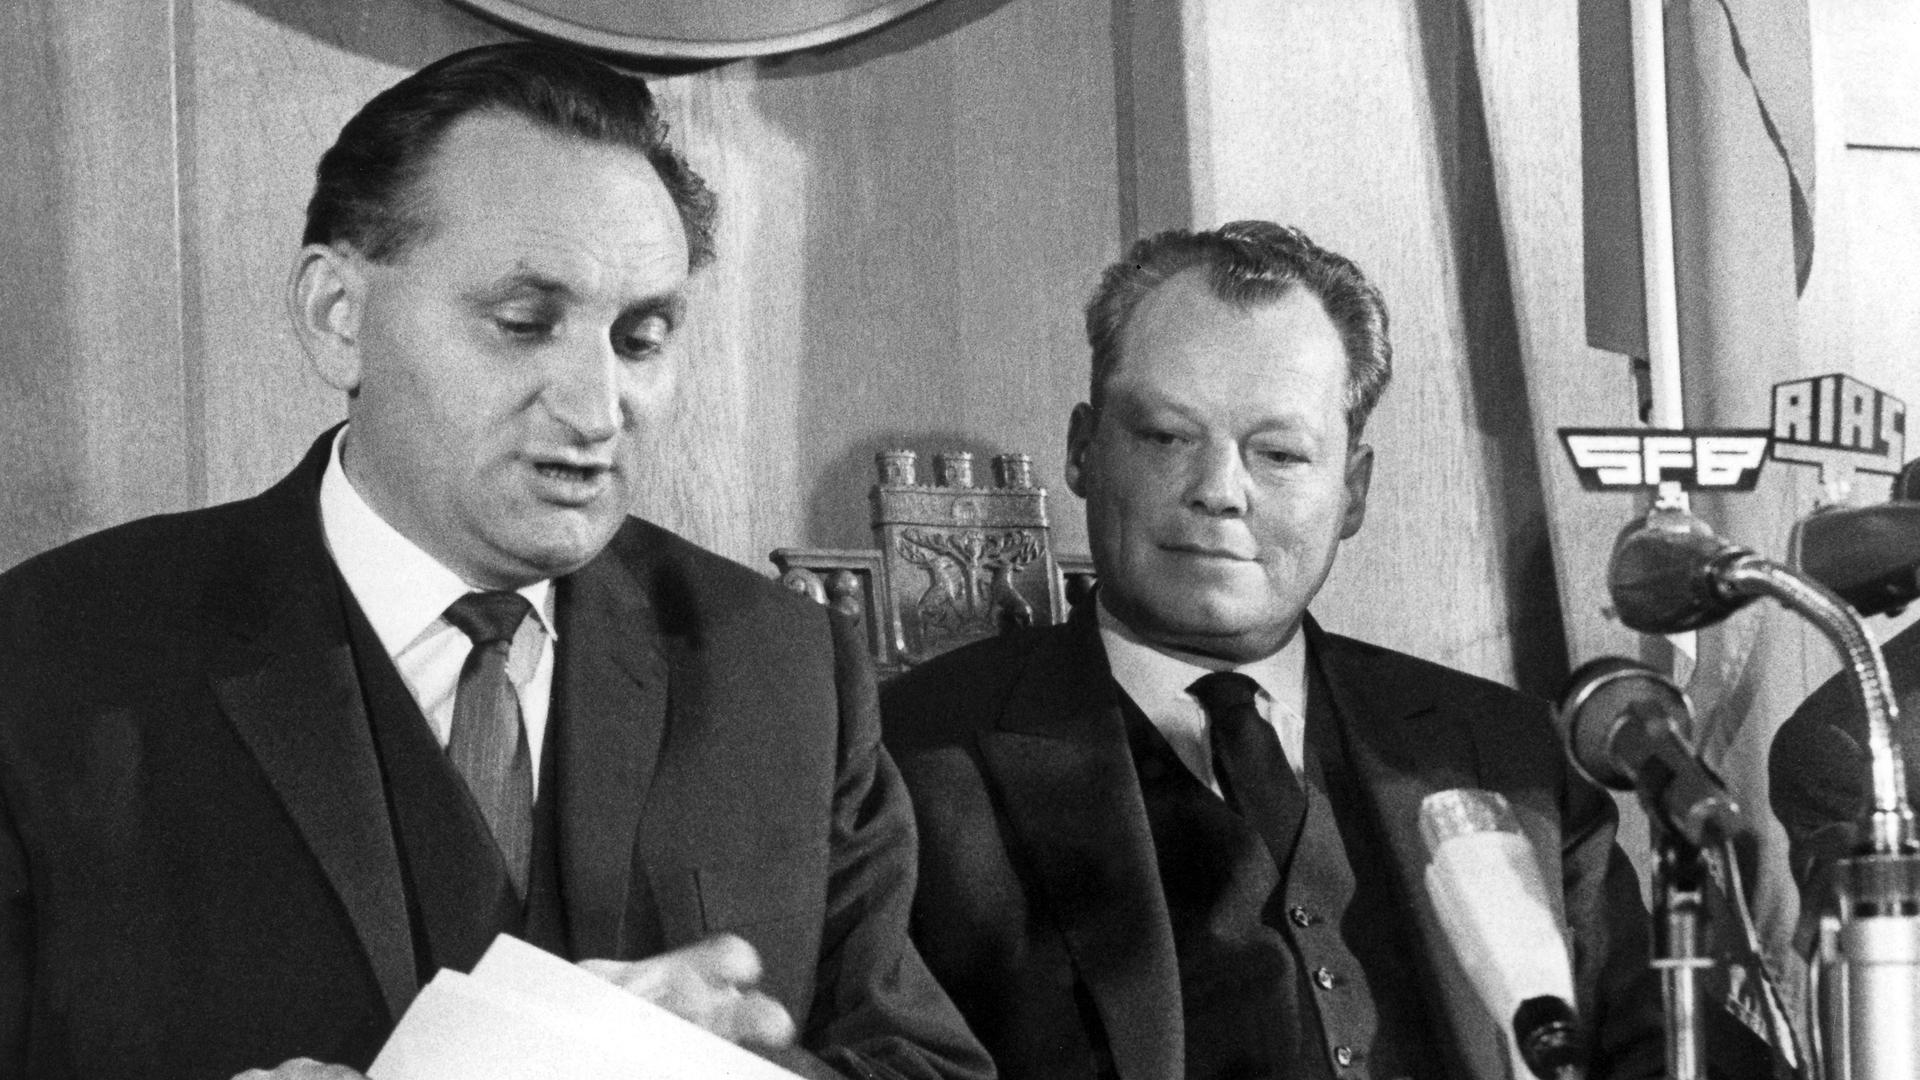 Der Regierende Bürgermeister von Berlin, Willy Brandt, und Senatspressechef Egon Bahr erläutern am 17.12.1963 auf einer Pressekonferenz im Rathaus Schöneberg die mit Vertretern der Sowjetzone getroffene Regelung in der Passierscheinfrage. 